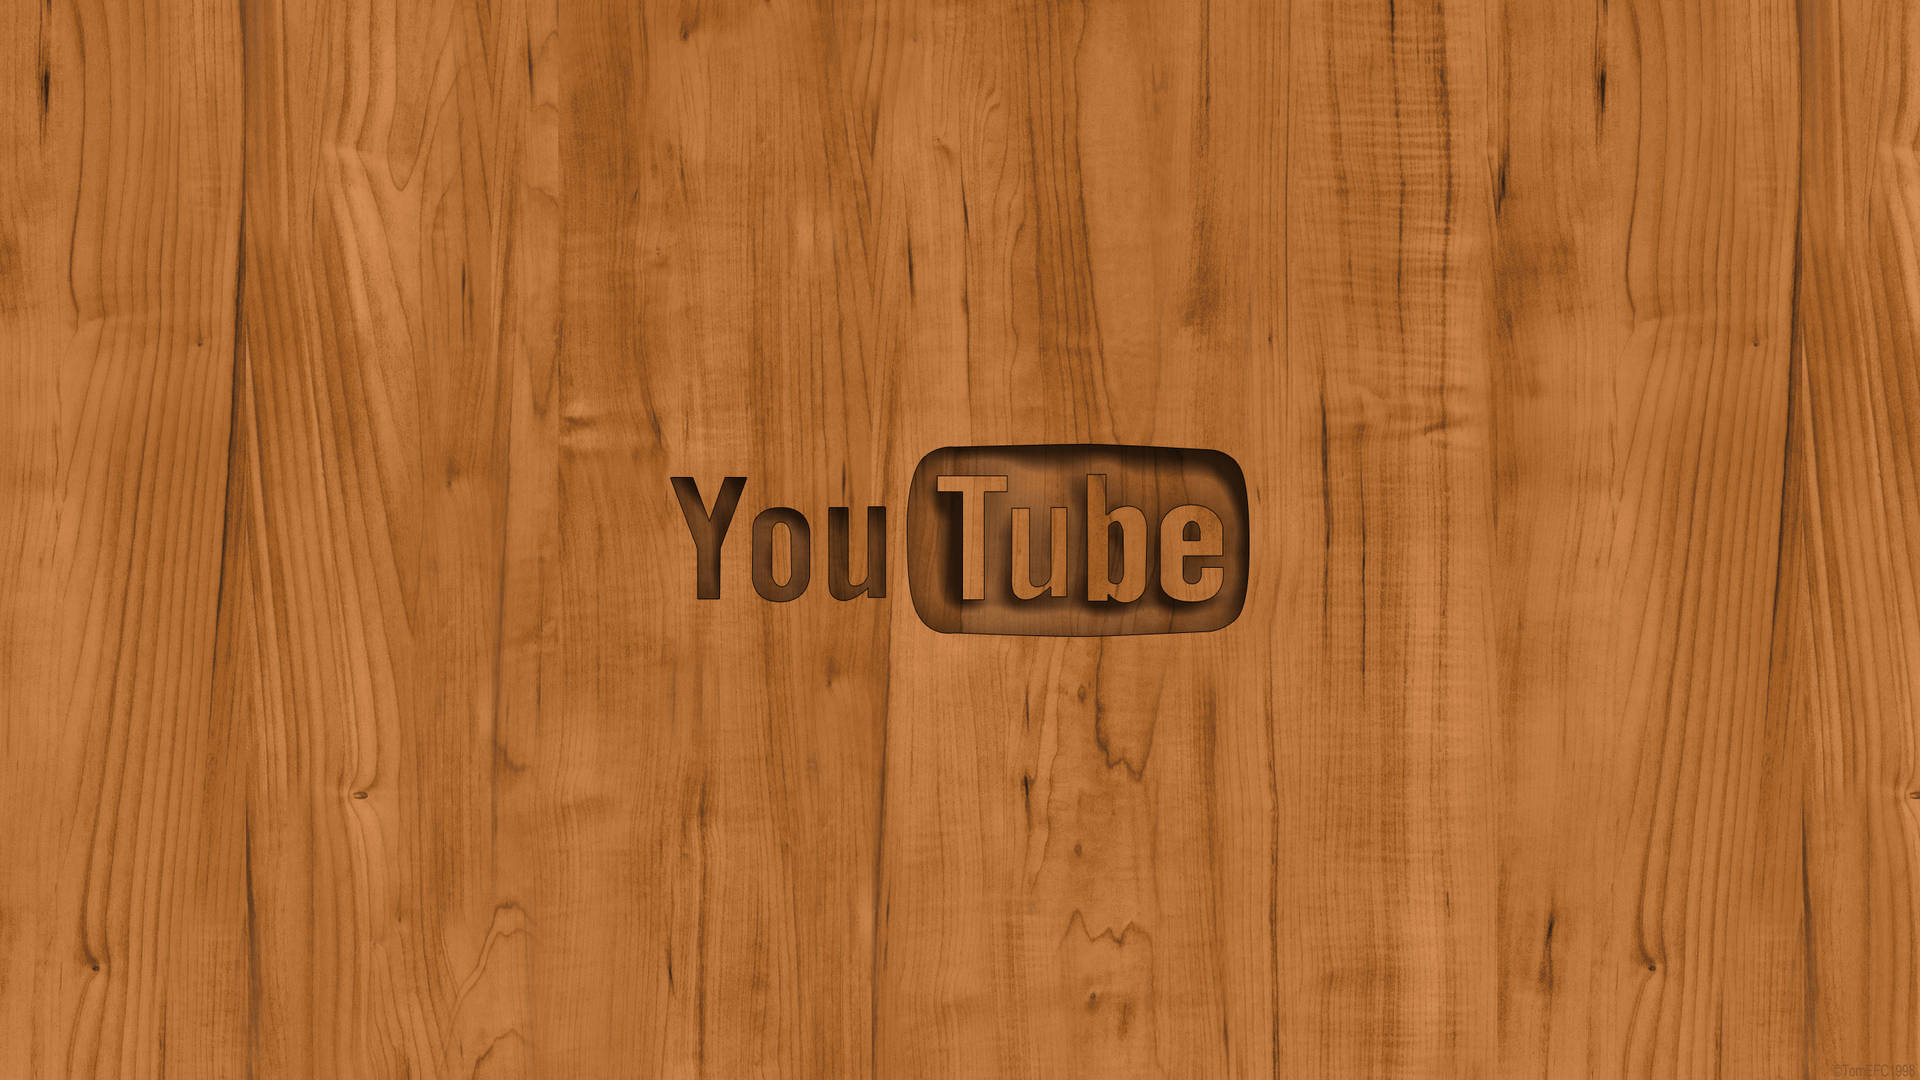 Logotipode Youtube En Madera Fondo de pantalla